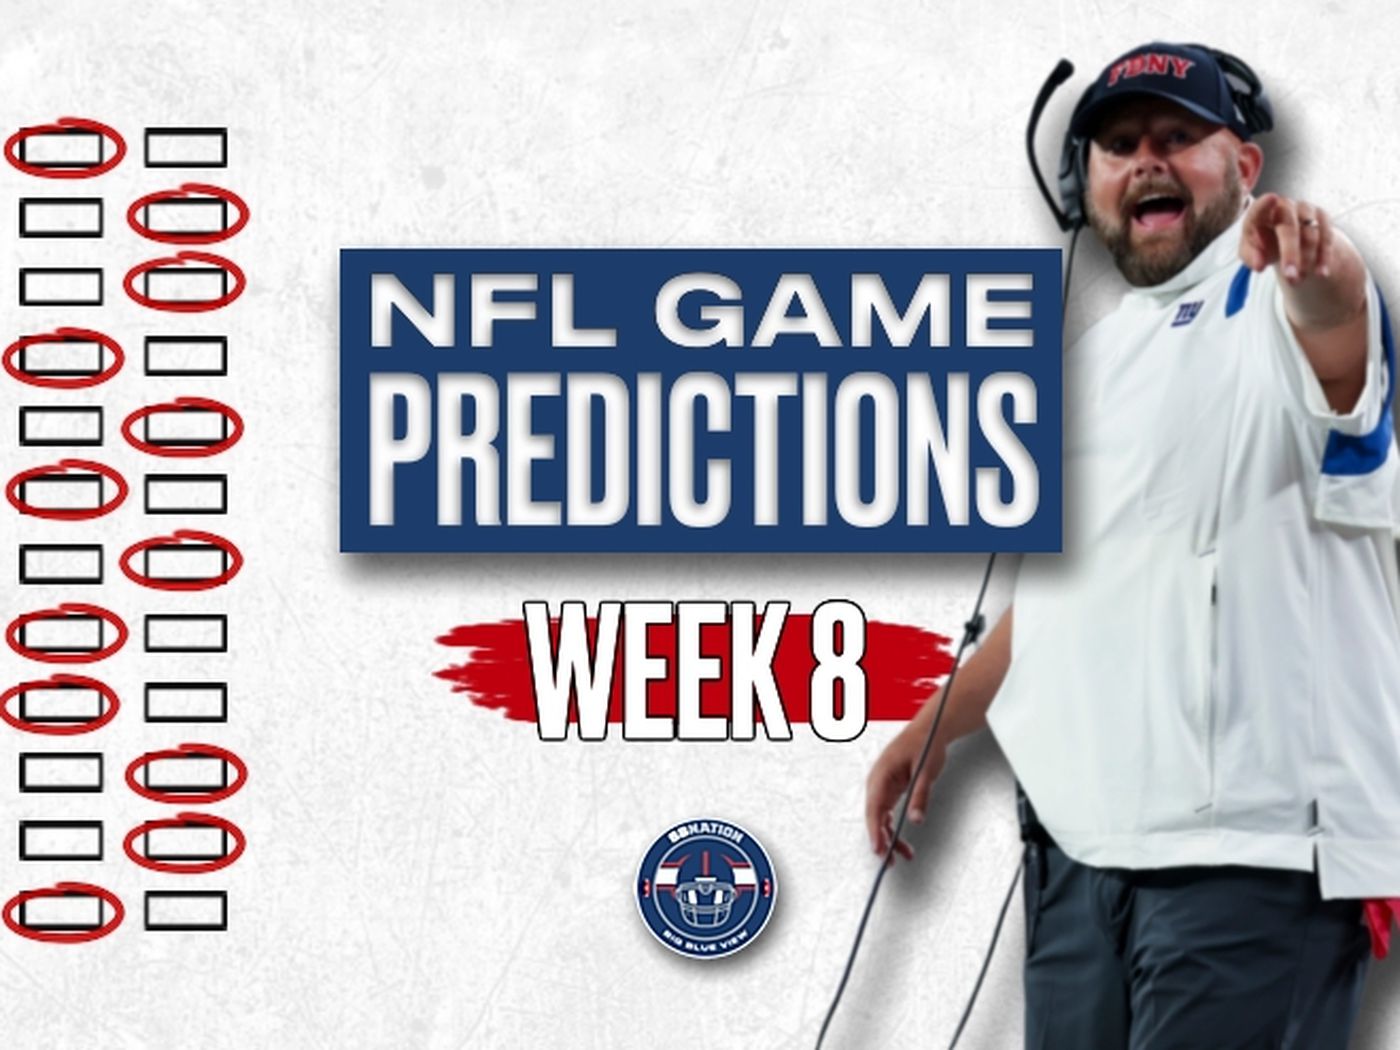 nfl games week 8 predictions